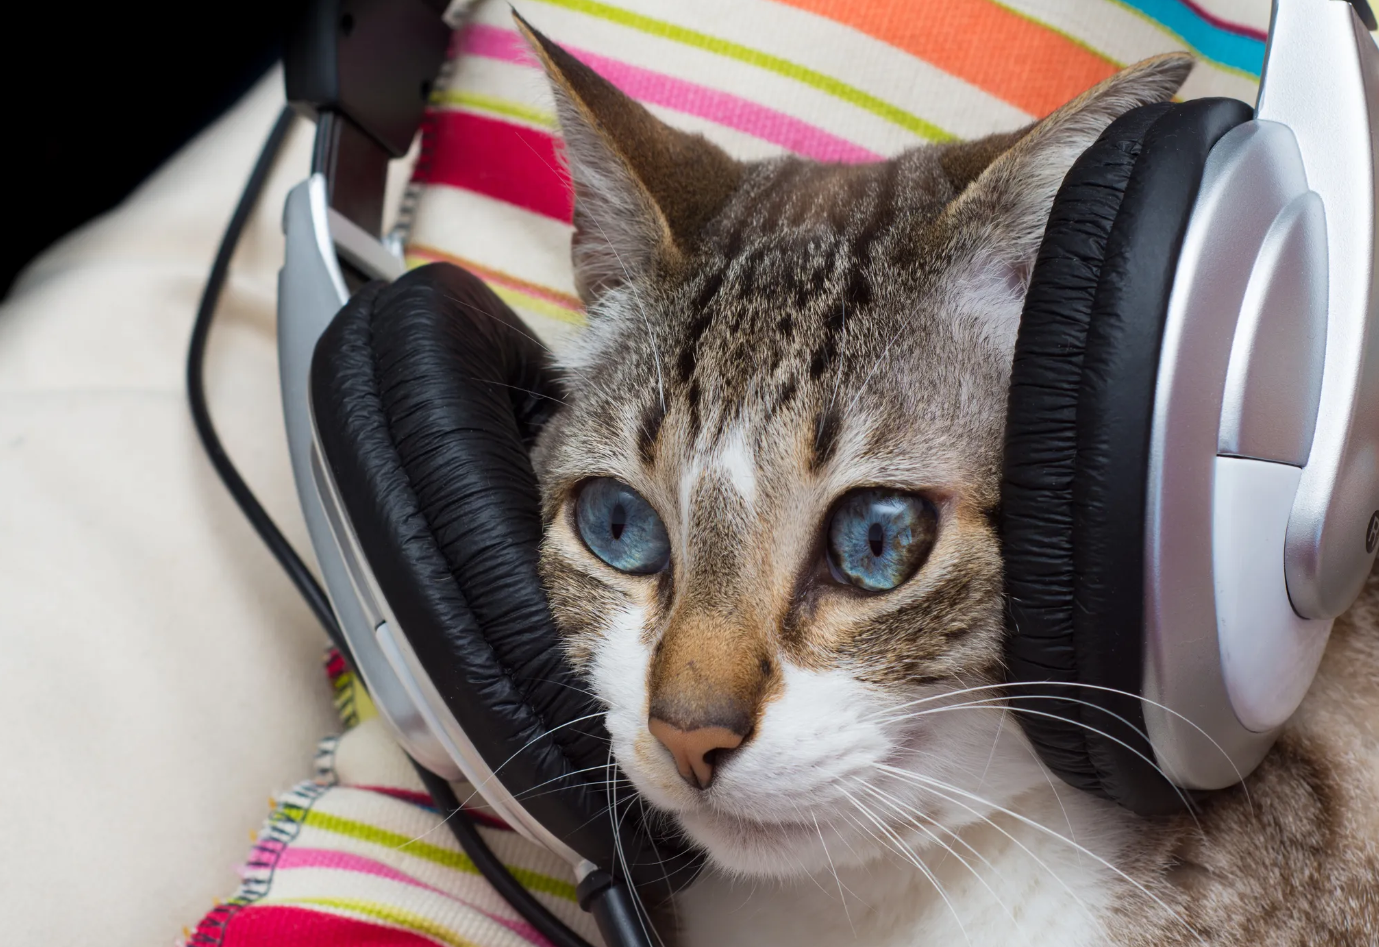 Los gatos tienen su música preferida que ayuda a tranquilizarlos